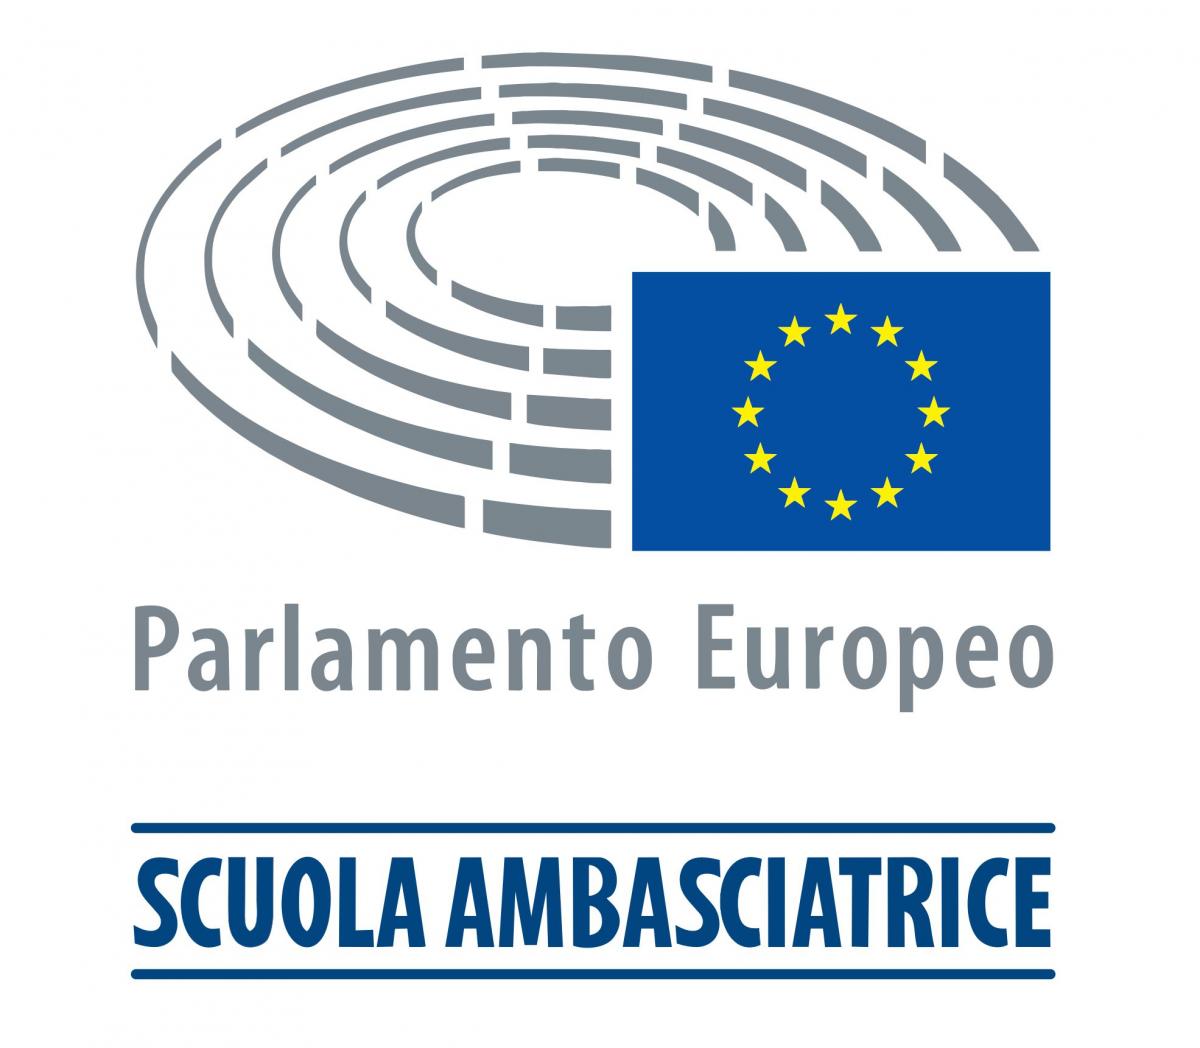 Programma Scuola ambasciatrice del Parlamento europeo.